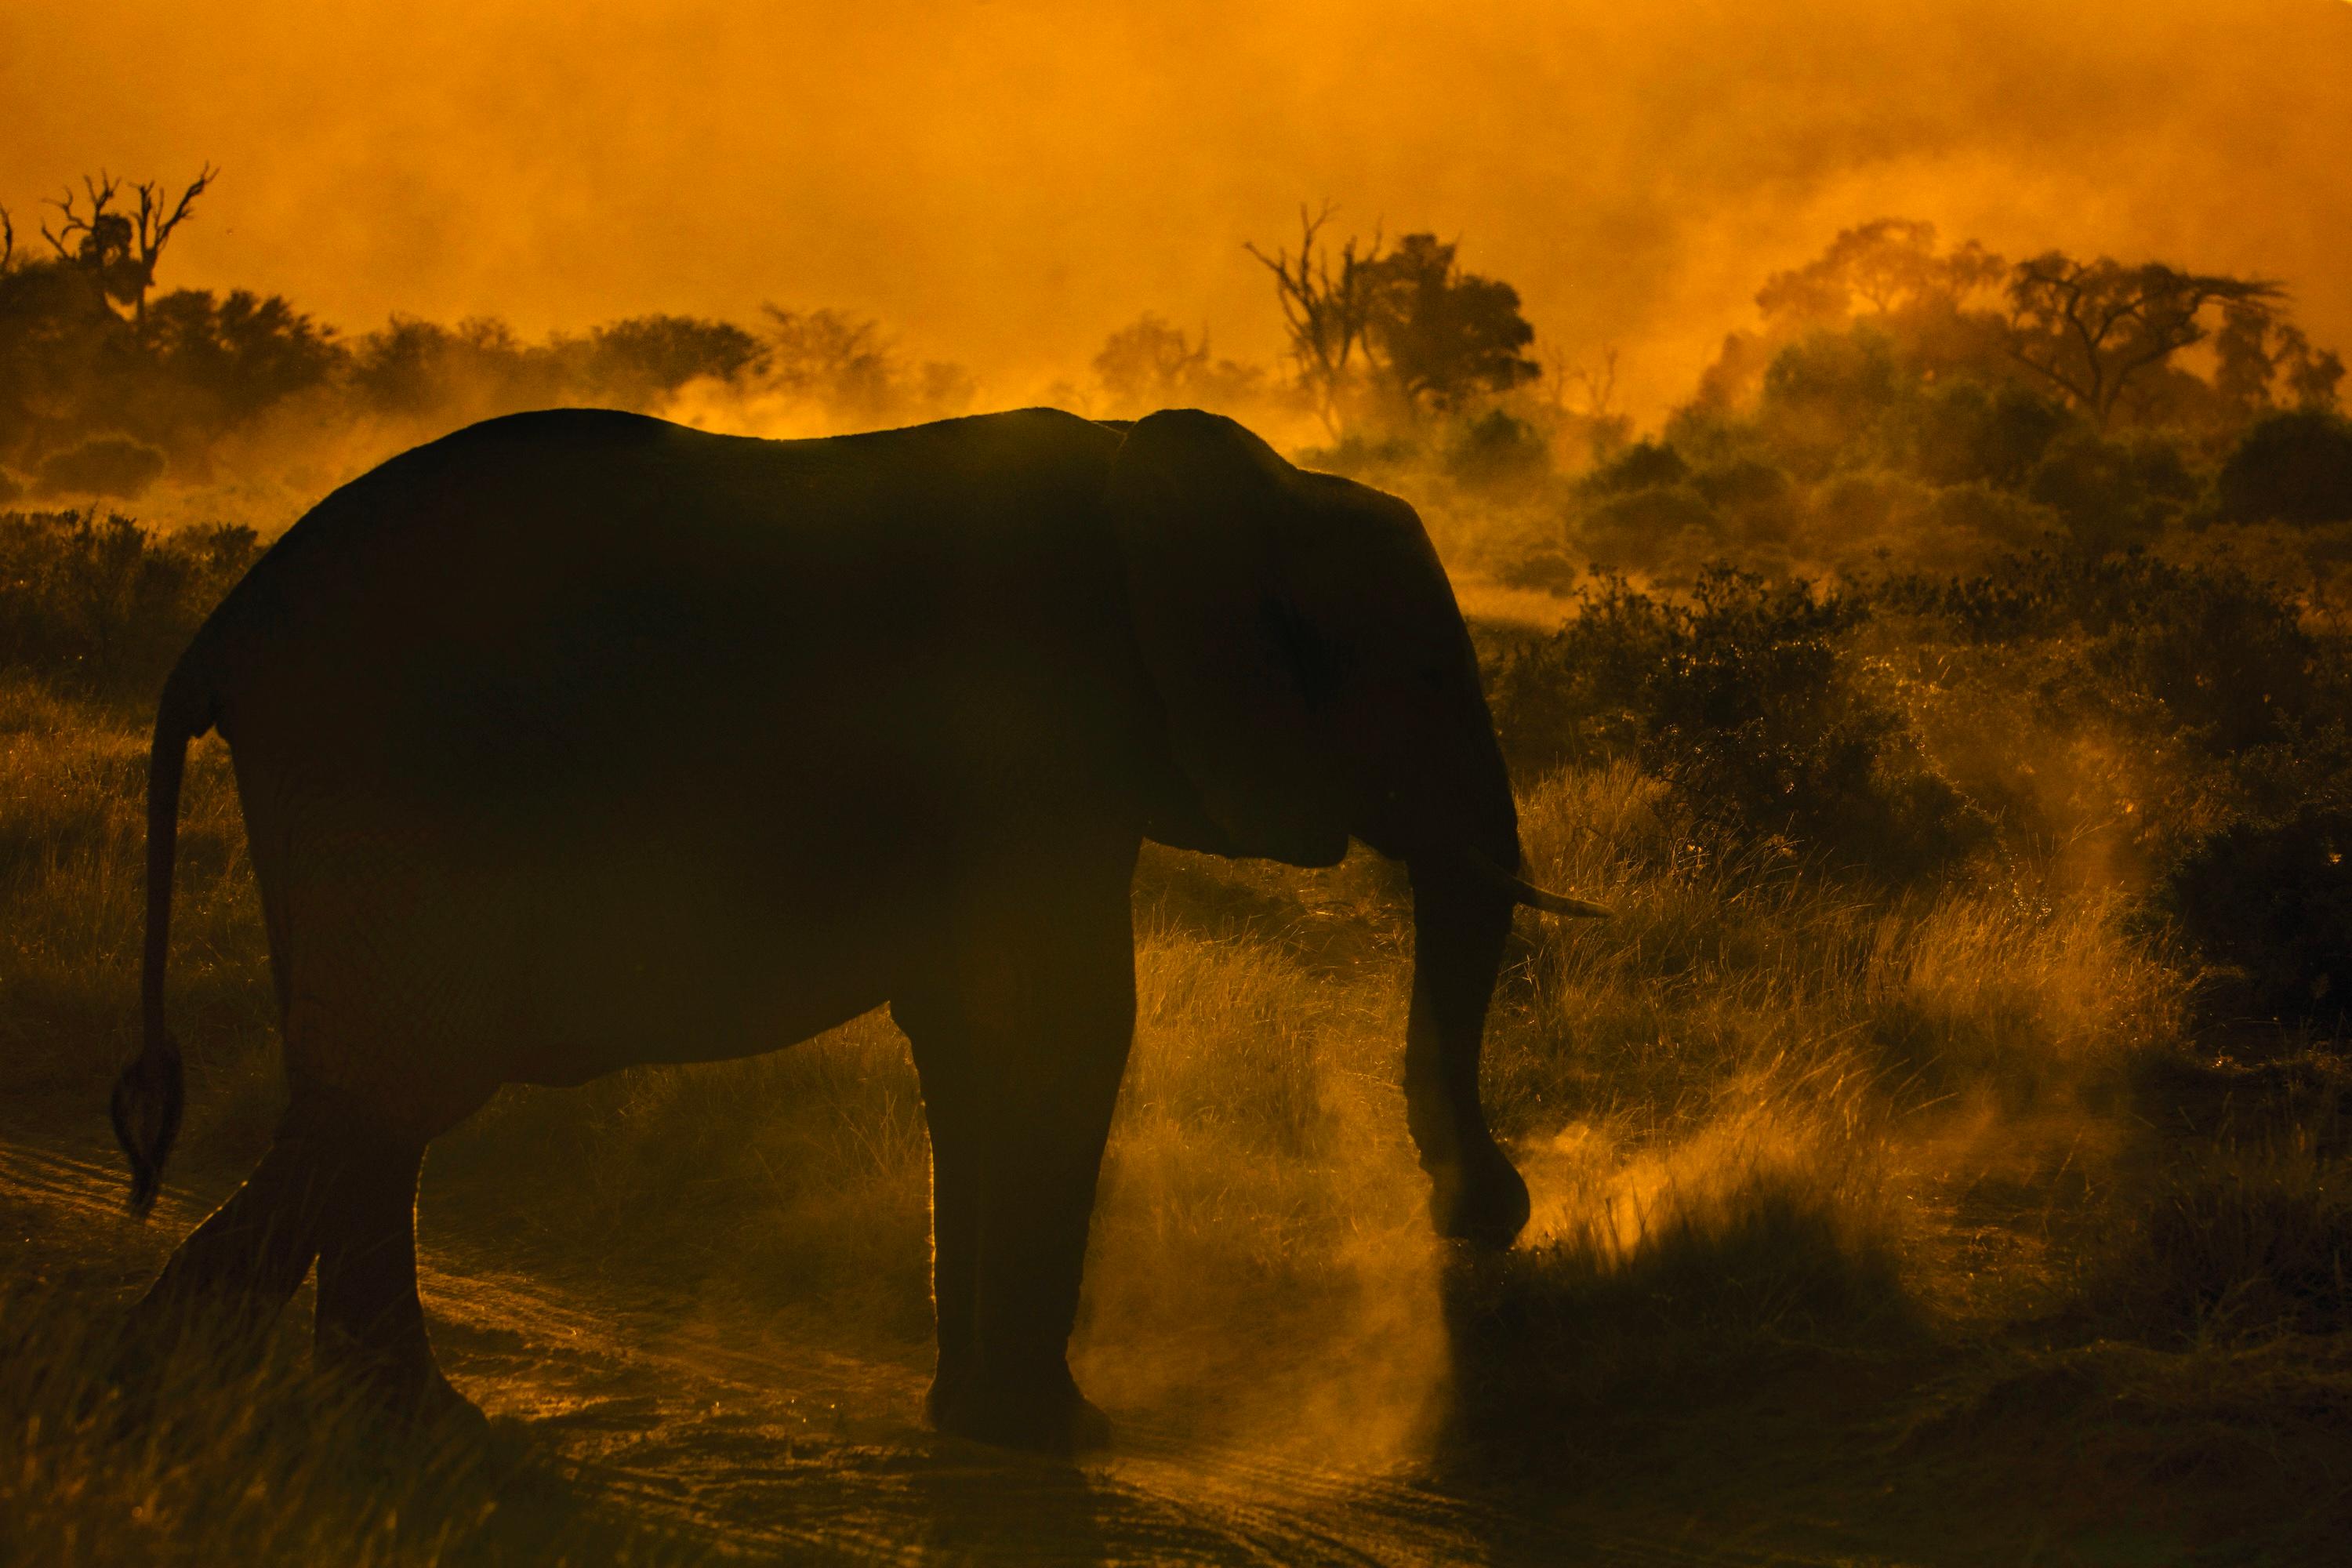  Landscape Large Photograph Nature Elephant Wildlife Africa Orange Trees Sunset